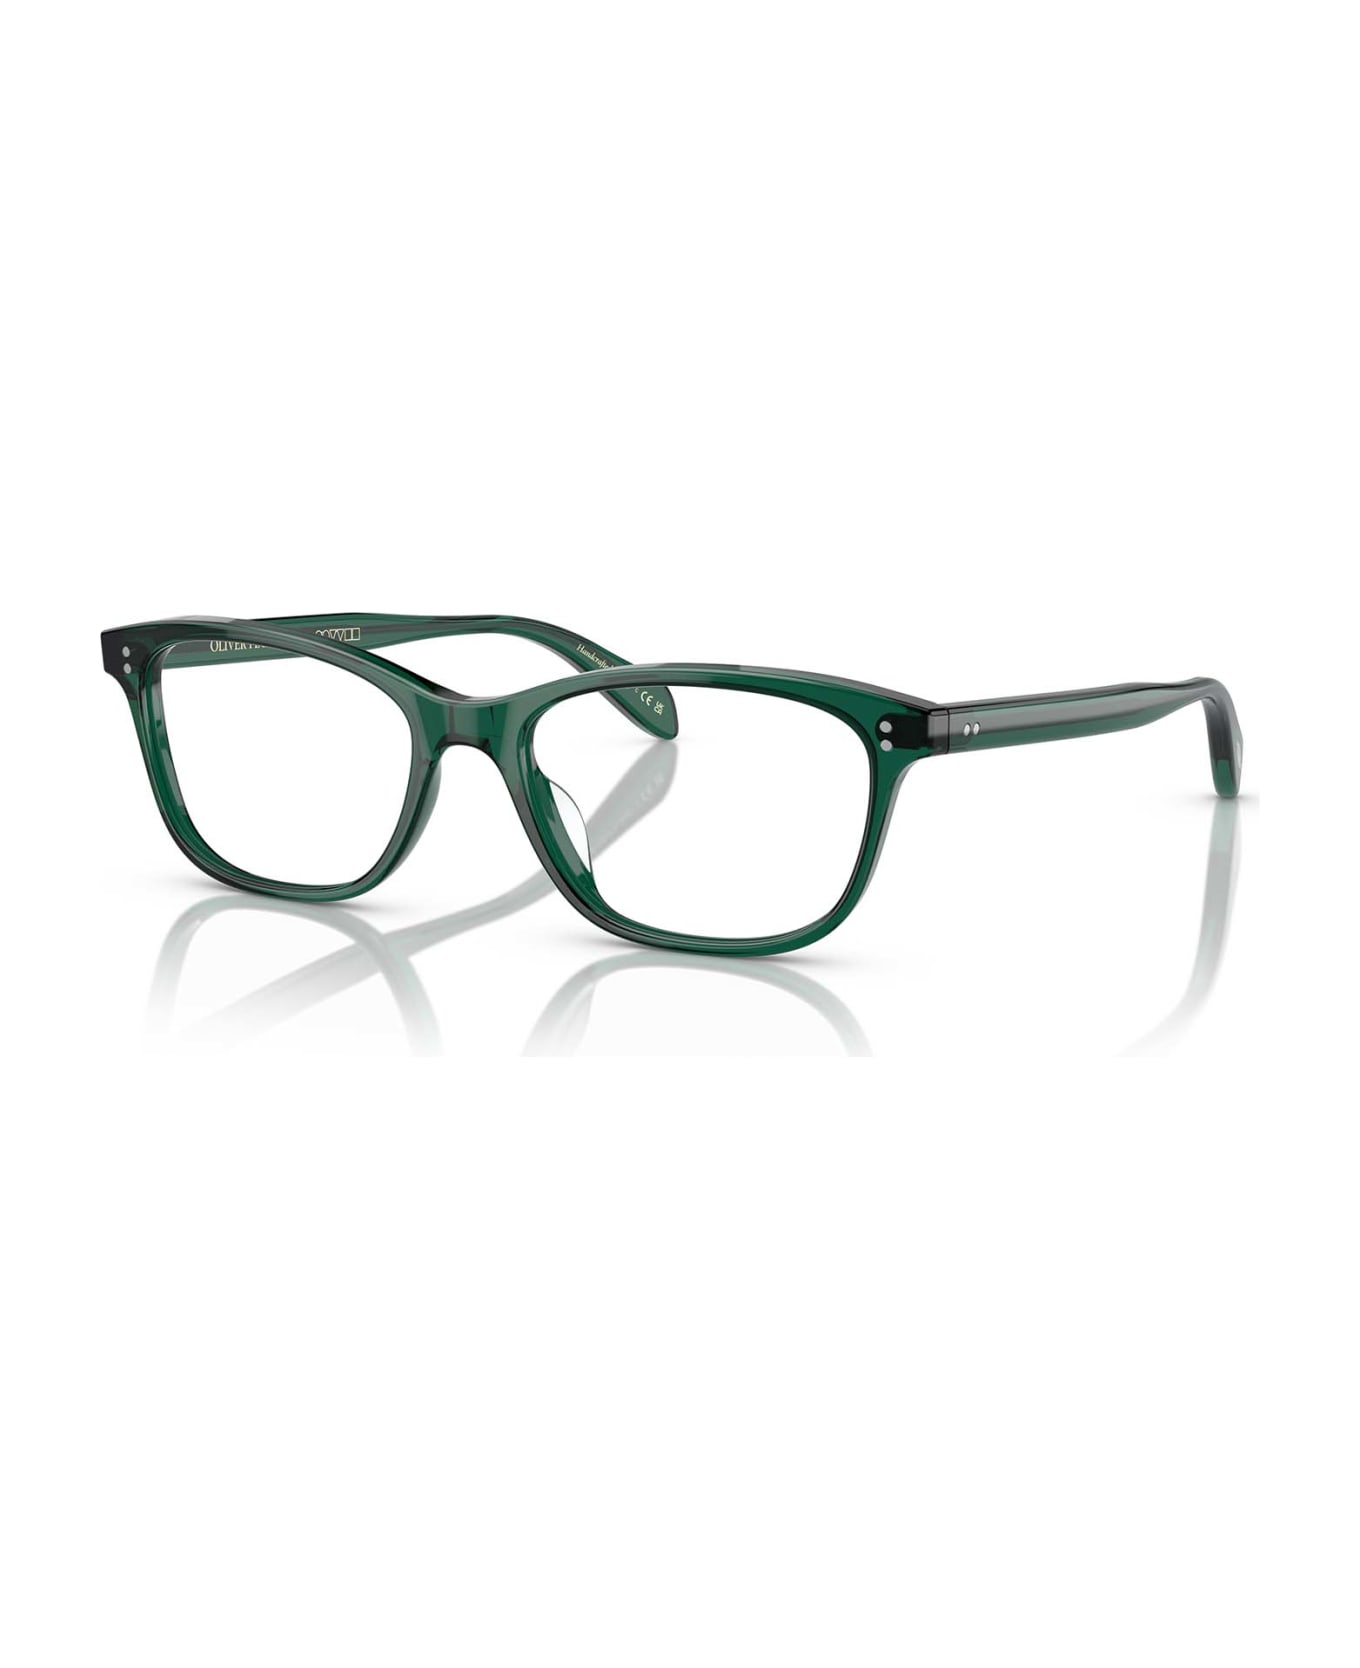 Oliver Peoples Ov5224 Translucent Dark Teal Glasses - Translucent Dark Teal アイウェア